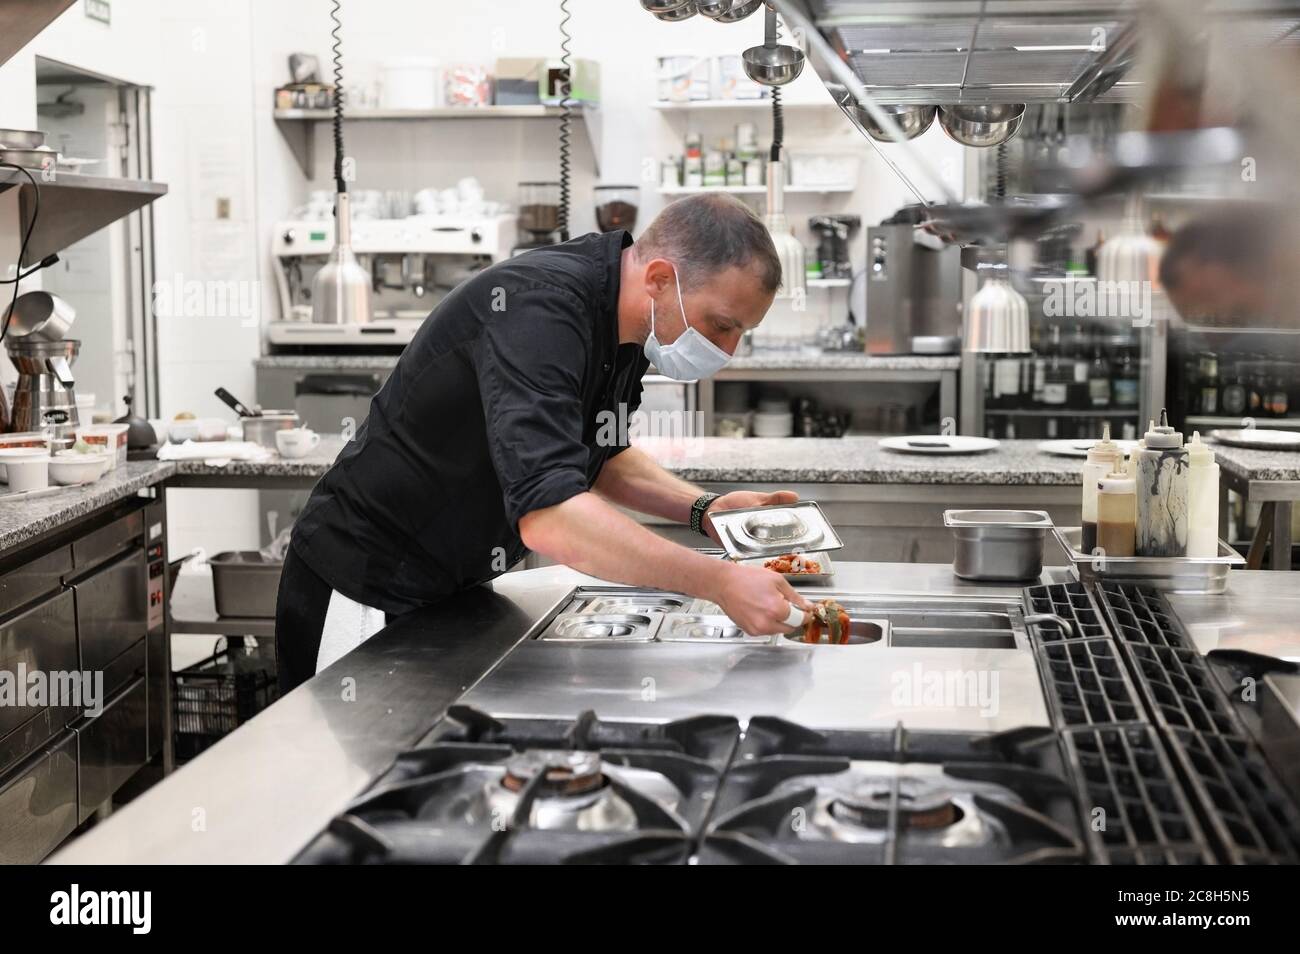 Chef en cuisine uniforme dans une cuisine commerciale. Un cuisinier masculin portant un tablier debout près du comptoir de cuisine préparant les aliments. Photo de haute qualité Banque D'Images